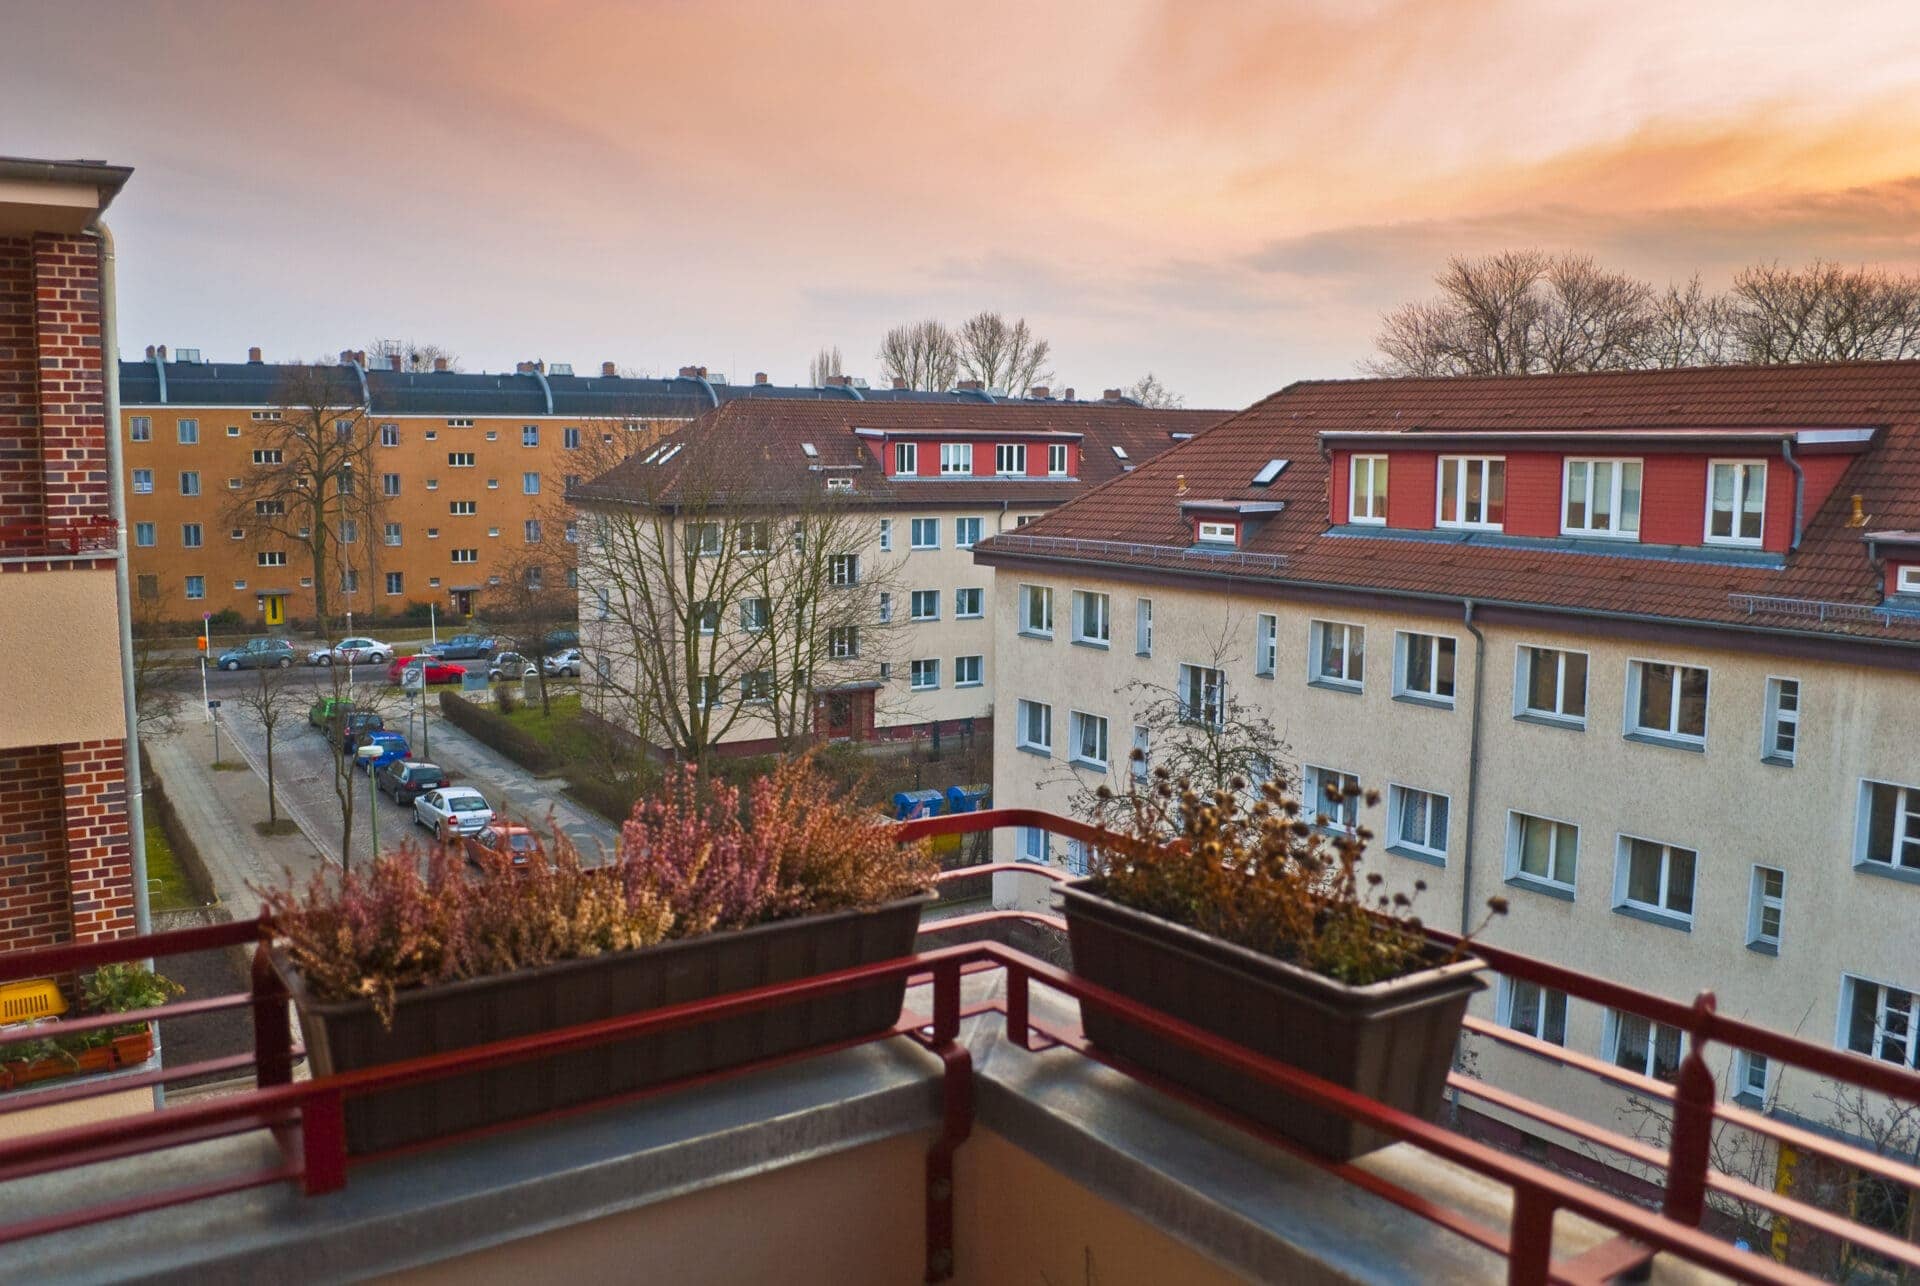 Wohngebiet in Berlin: Blick vom Balkon in die Abendsonne